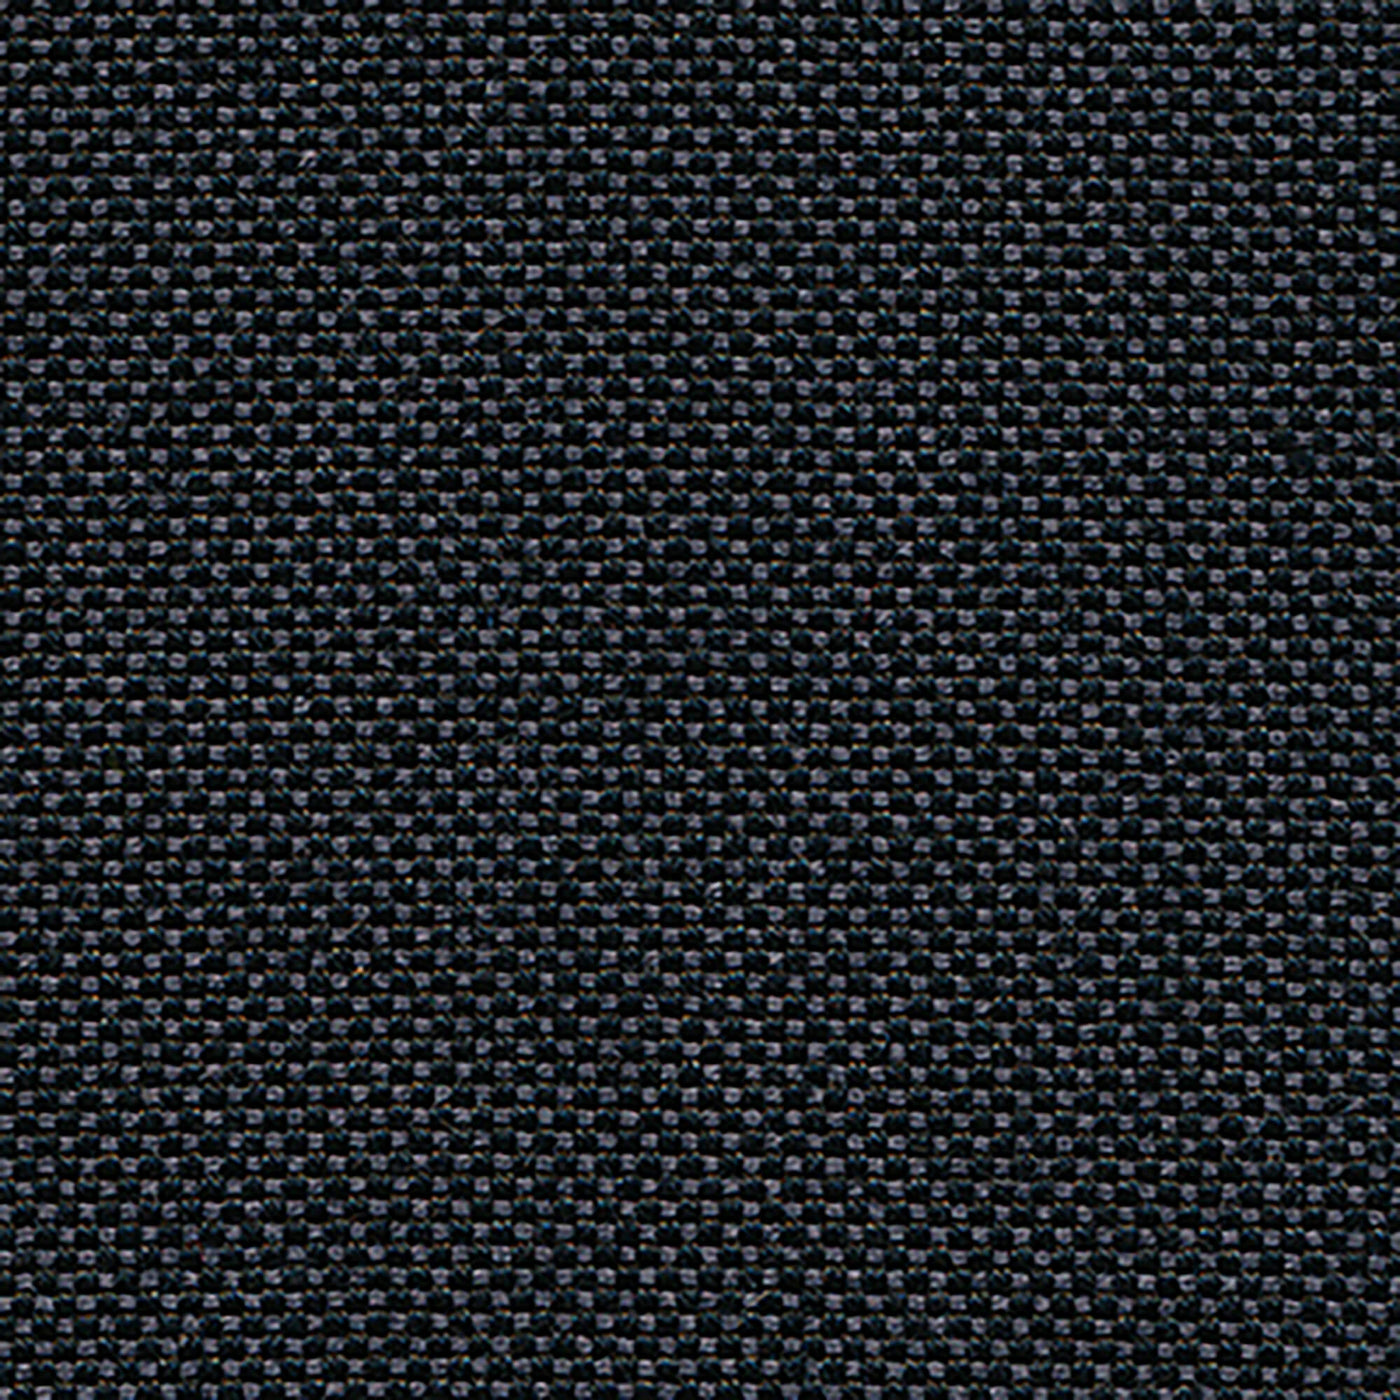 PENGI Outdoor Curtains Waterproof - Sailcloth Black